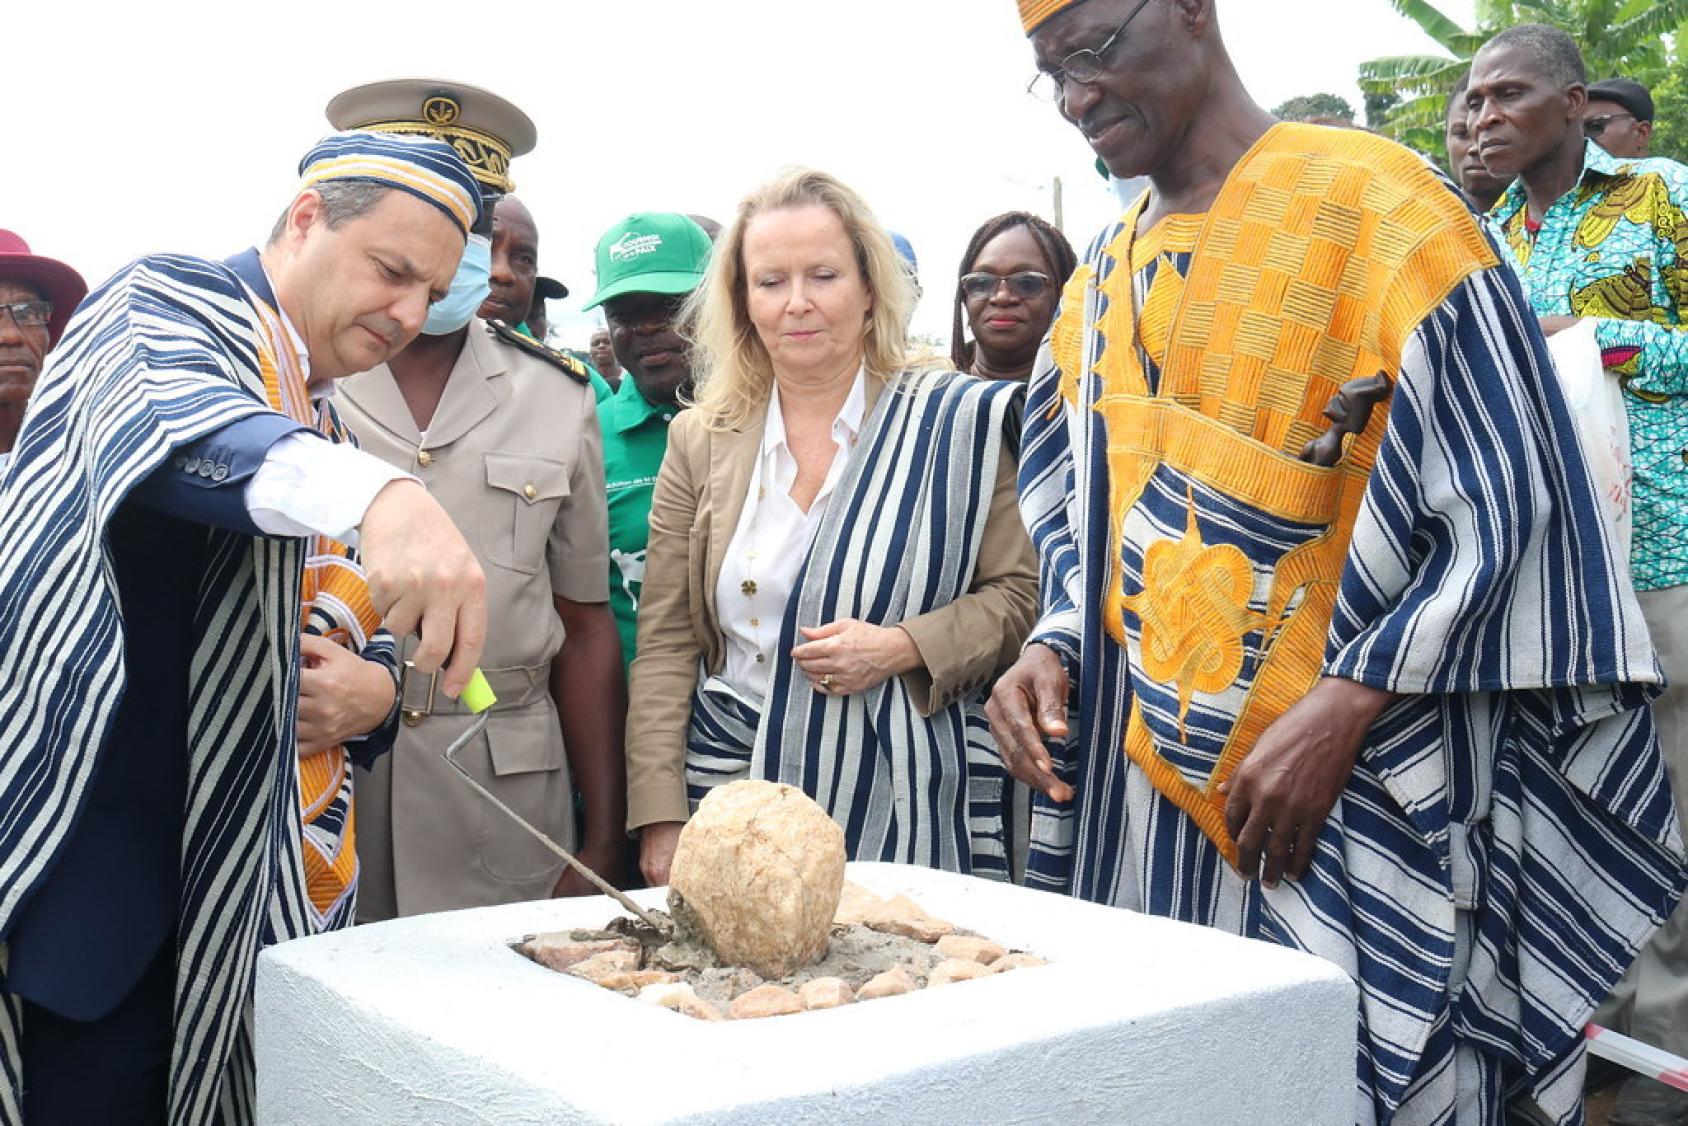 Le Coordonnateur résident des Nations Unies Philippe Poinsot pose la première pierre d'un moulin multifonctionnel. Vêtu d'un habit traditionnel ivoirien, il se tient à côté de la Représentante de l'UNESCO en Côte d'Ivoire et du Chef du canton de Biankouma, lui aussi vêtu d'un habit traditionnel.